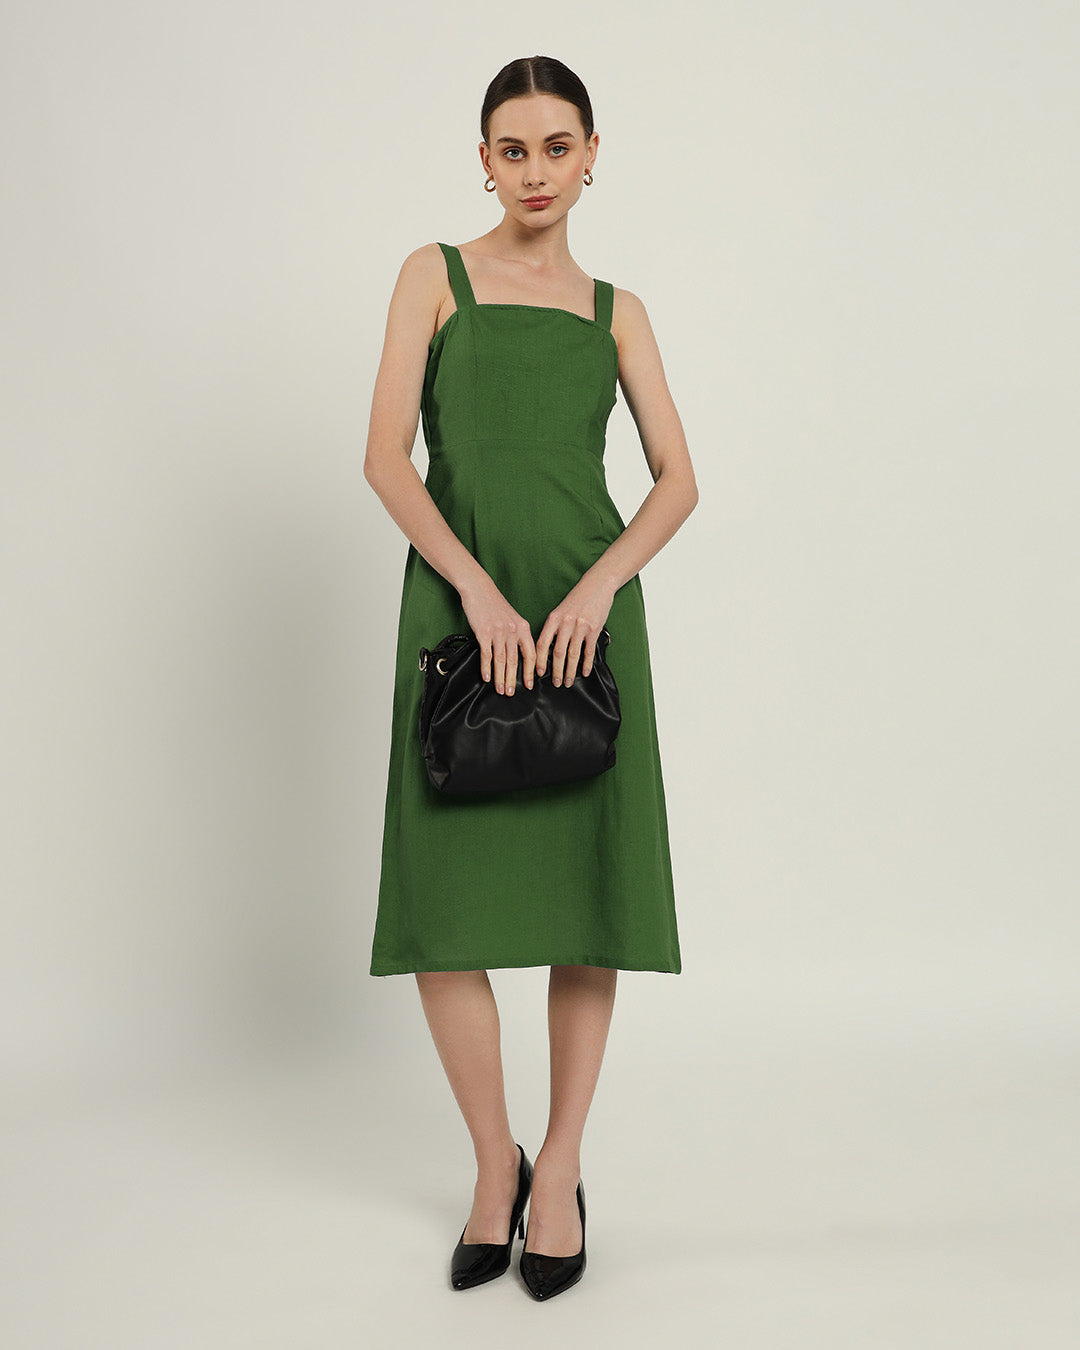 The Samara Emerald Cotton Dress